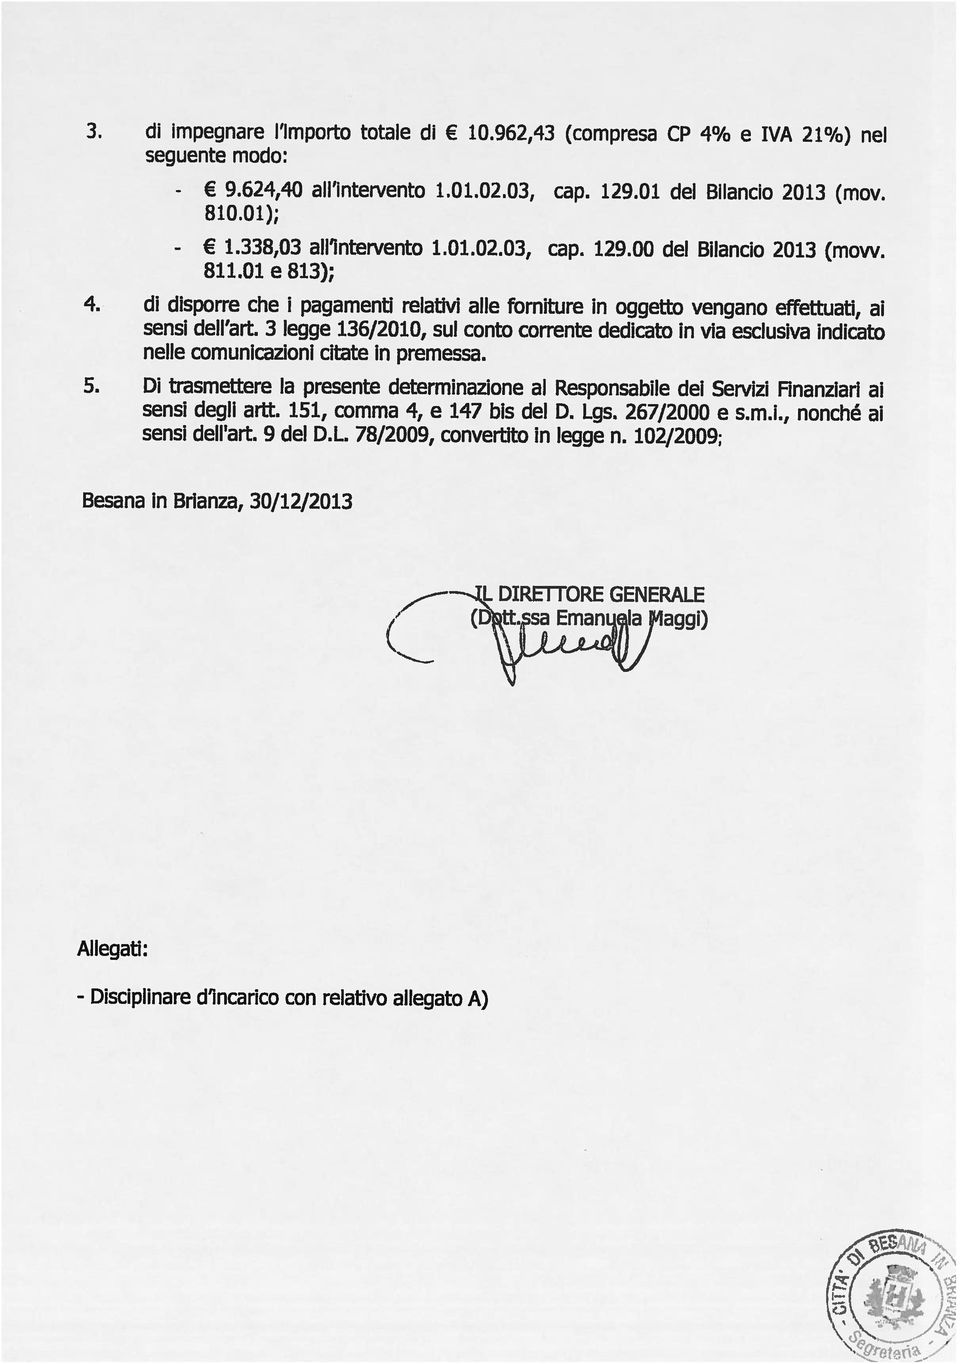 - Disciplinare d incarico con relativo allegato A) Allegati: DIRE1TORE GENERALE Besana in Brianza, 30/12/2013 sensi degli artt. 151, comma 4, e 147 bis del D. Lgs. 267/2000 e s.m.l, nonché ai sensi dell art.